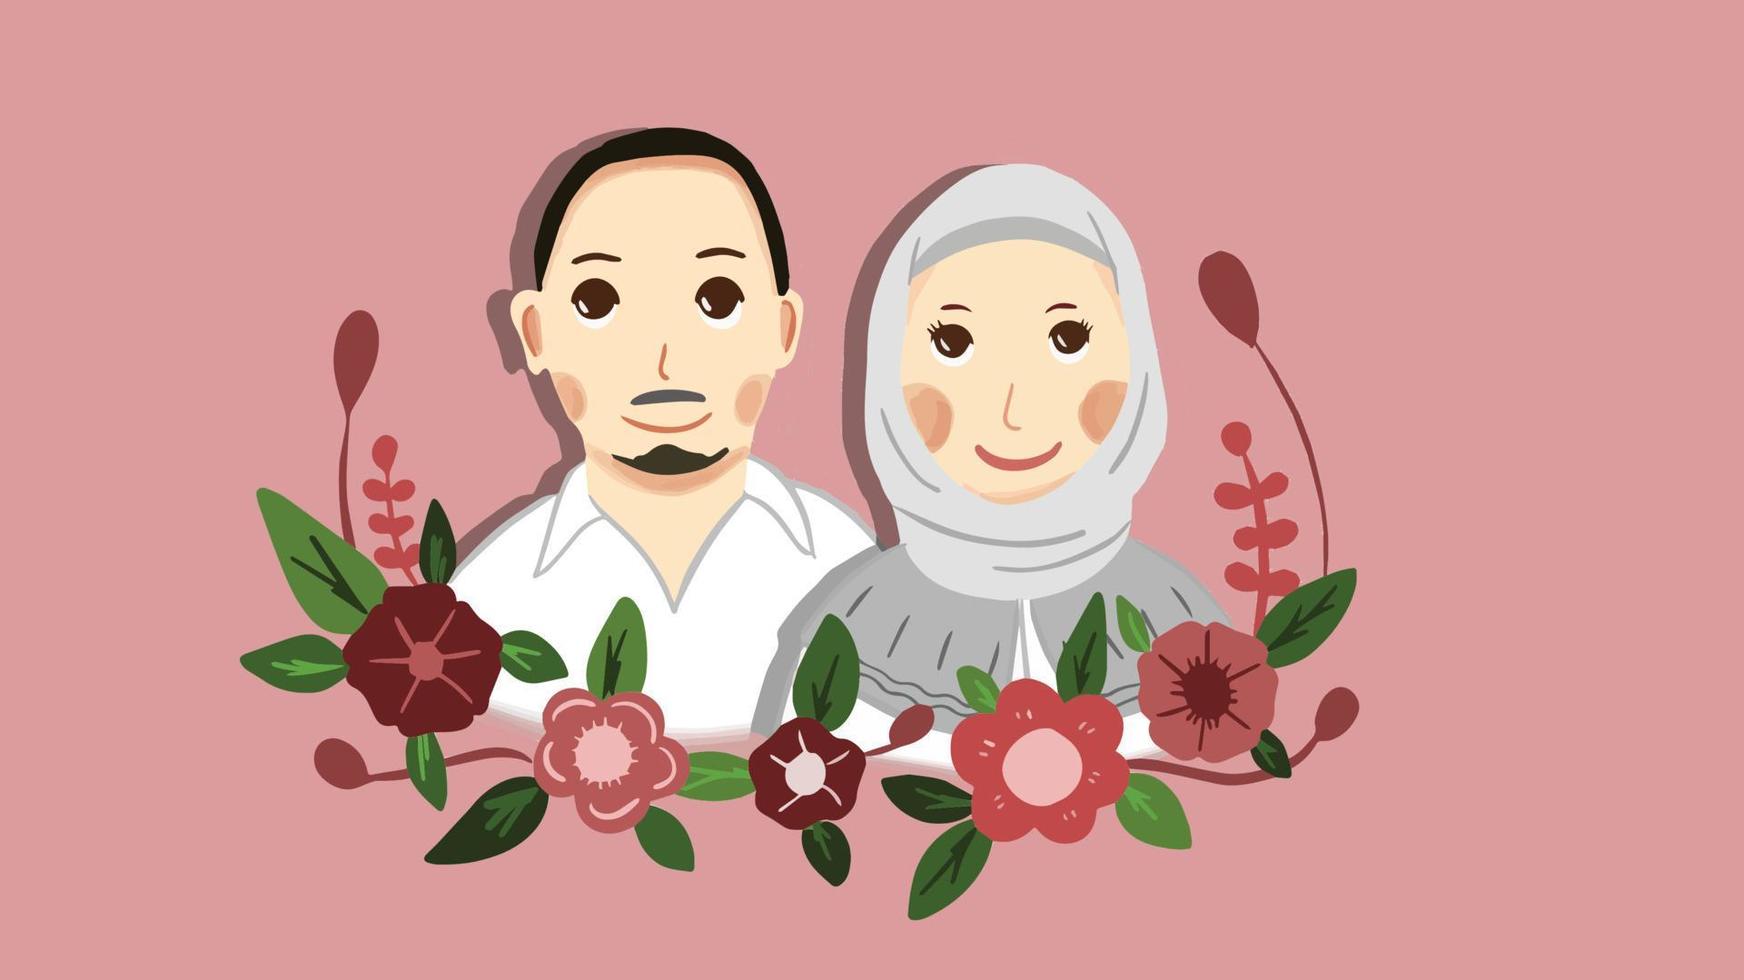 leuke moslimpaarillustratie voor huwelijksuitnodiging vector